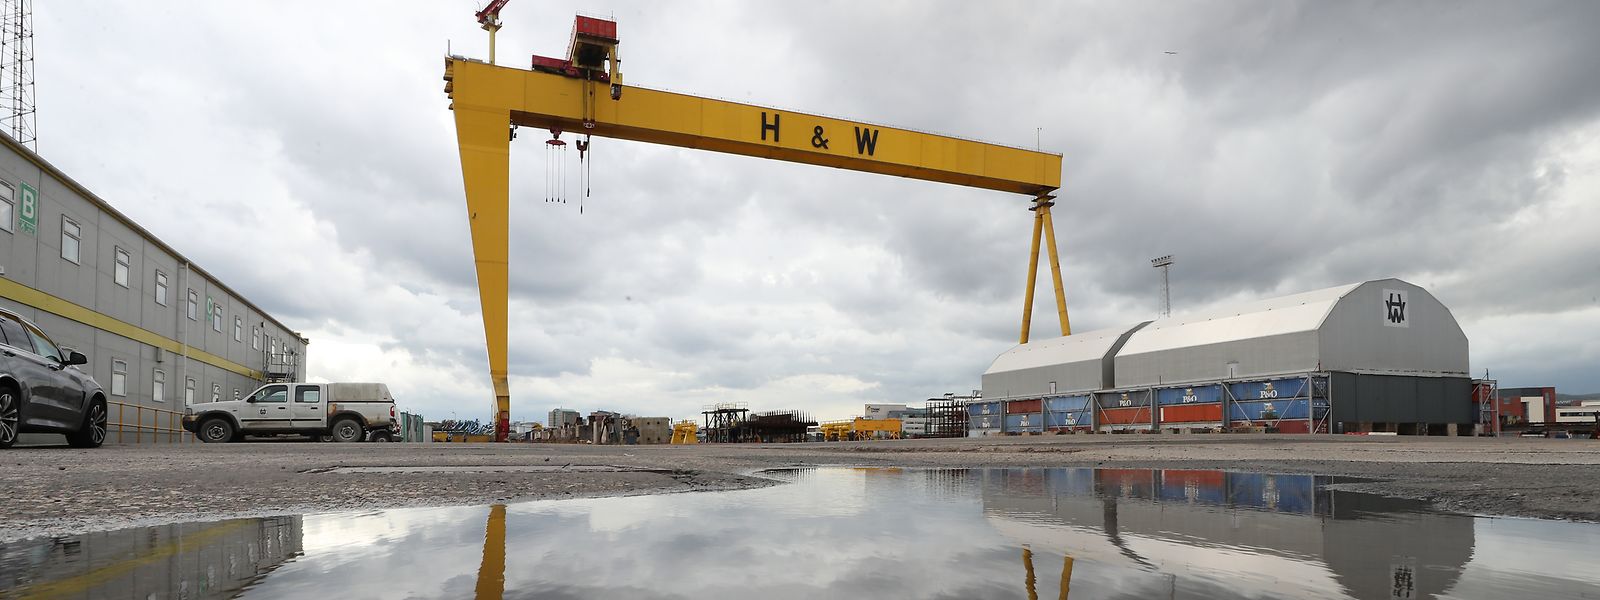 Das Firmengelände von Harland & Wolff in Belfast.